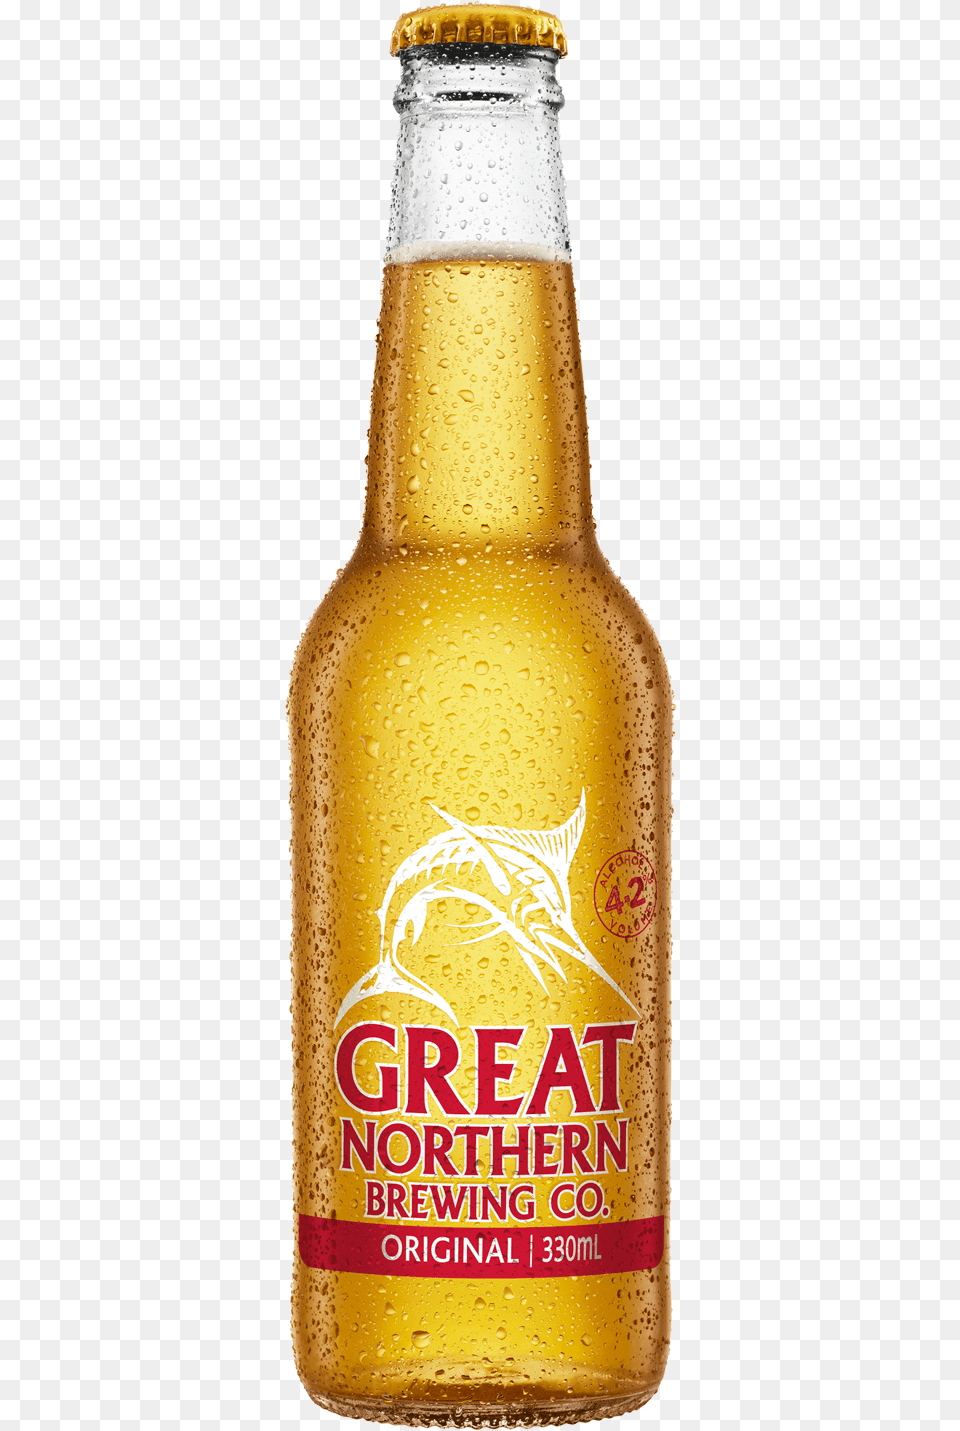 Great Northern Brewing Company Original Lager Bottles, Alcohol, Beer, Beer Bottle, Beverage Png Image